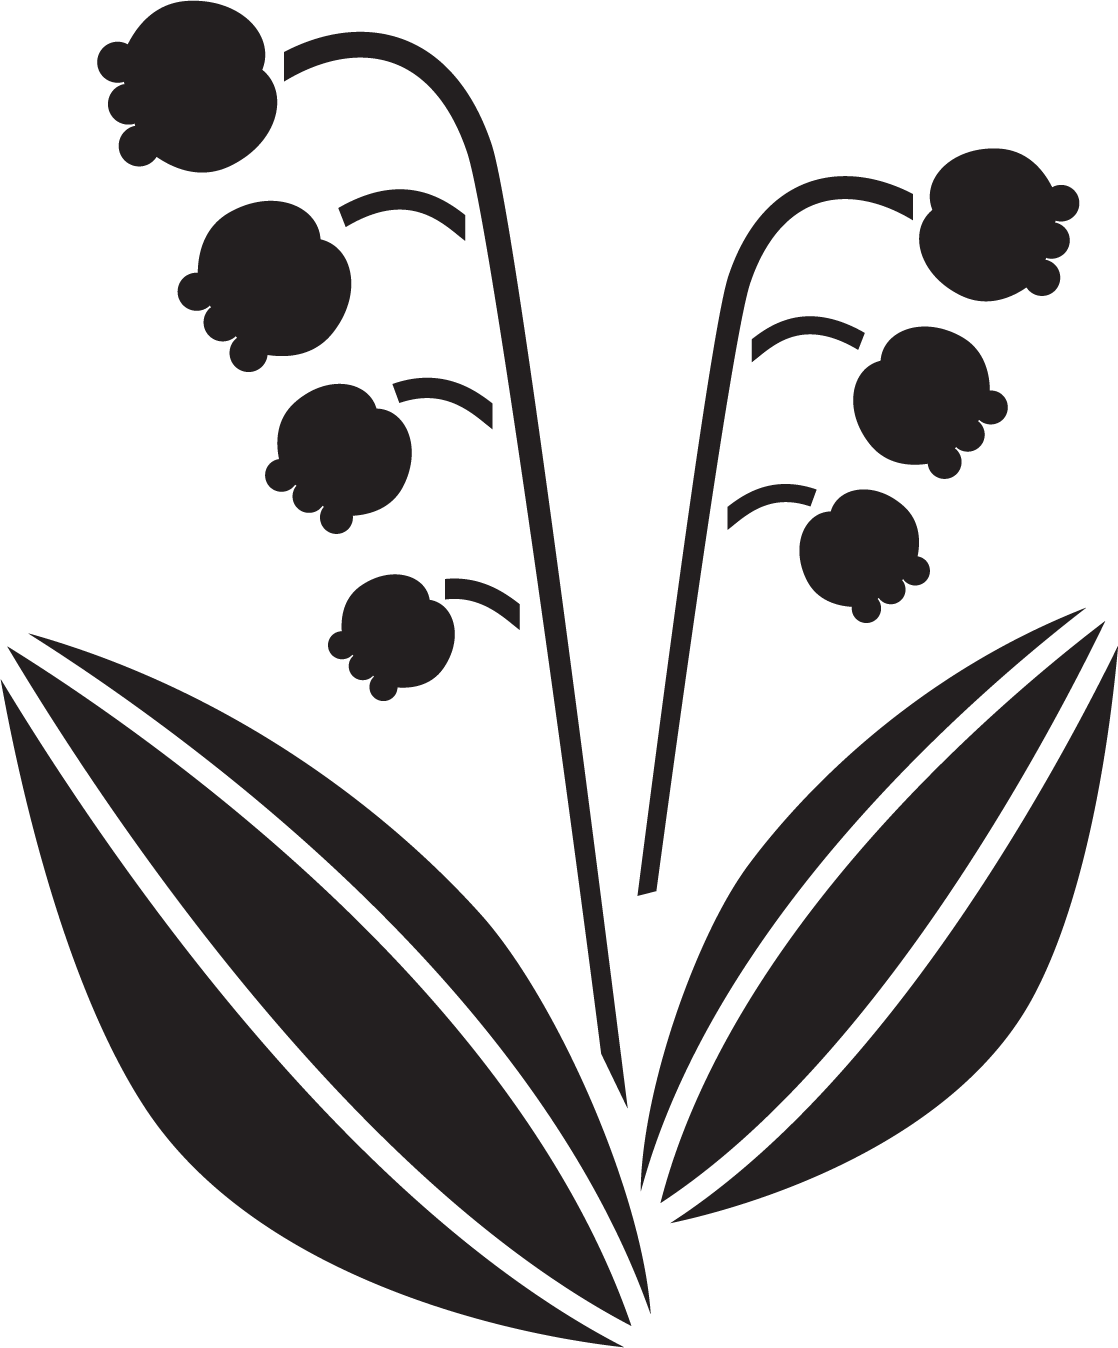 花のイラスト フリー素材 白黒 モノクロno 227 白黒 鈴蘭 葉